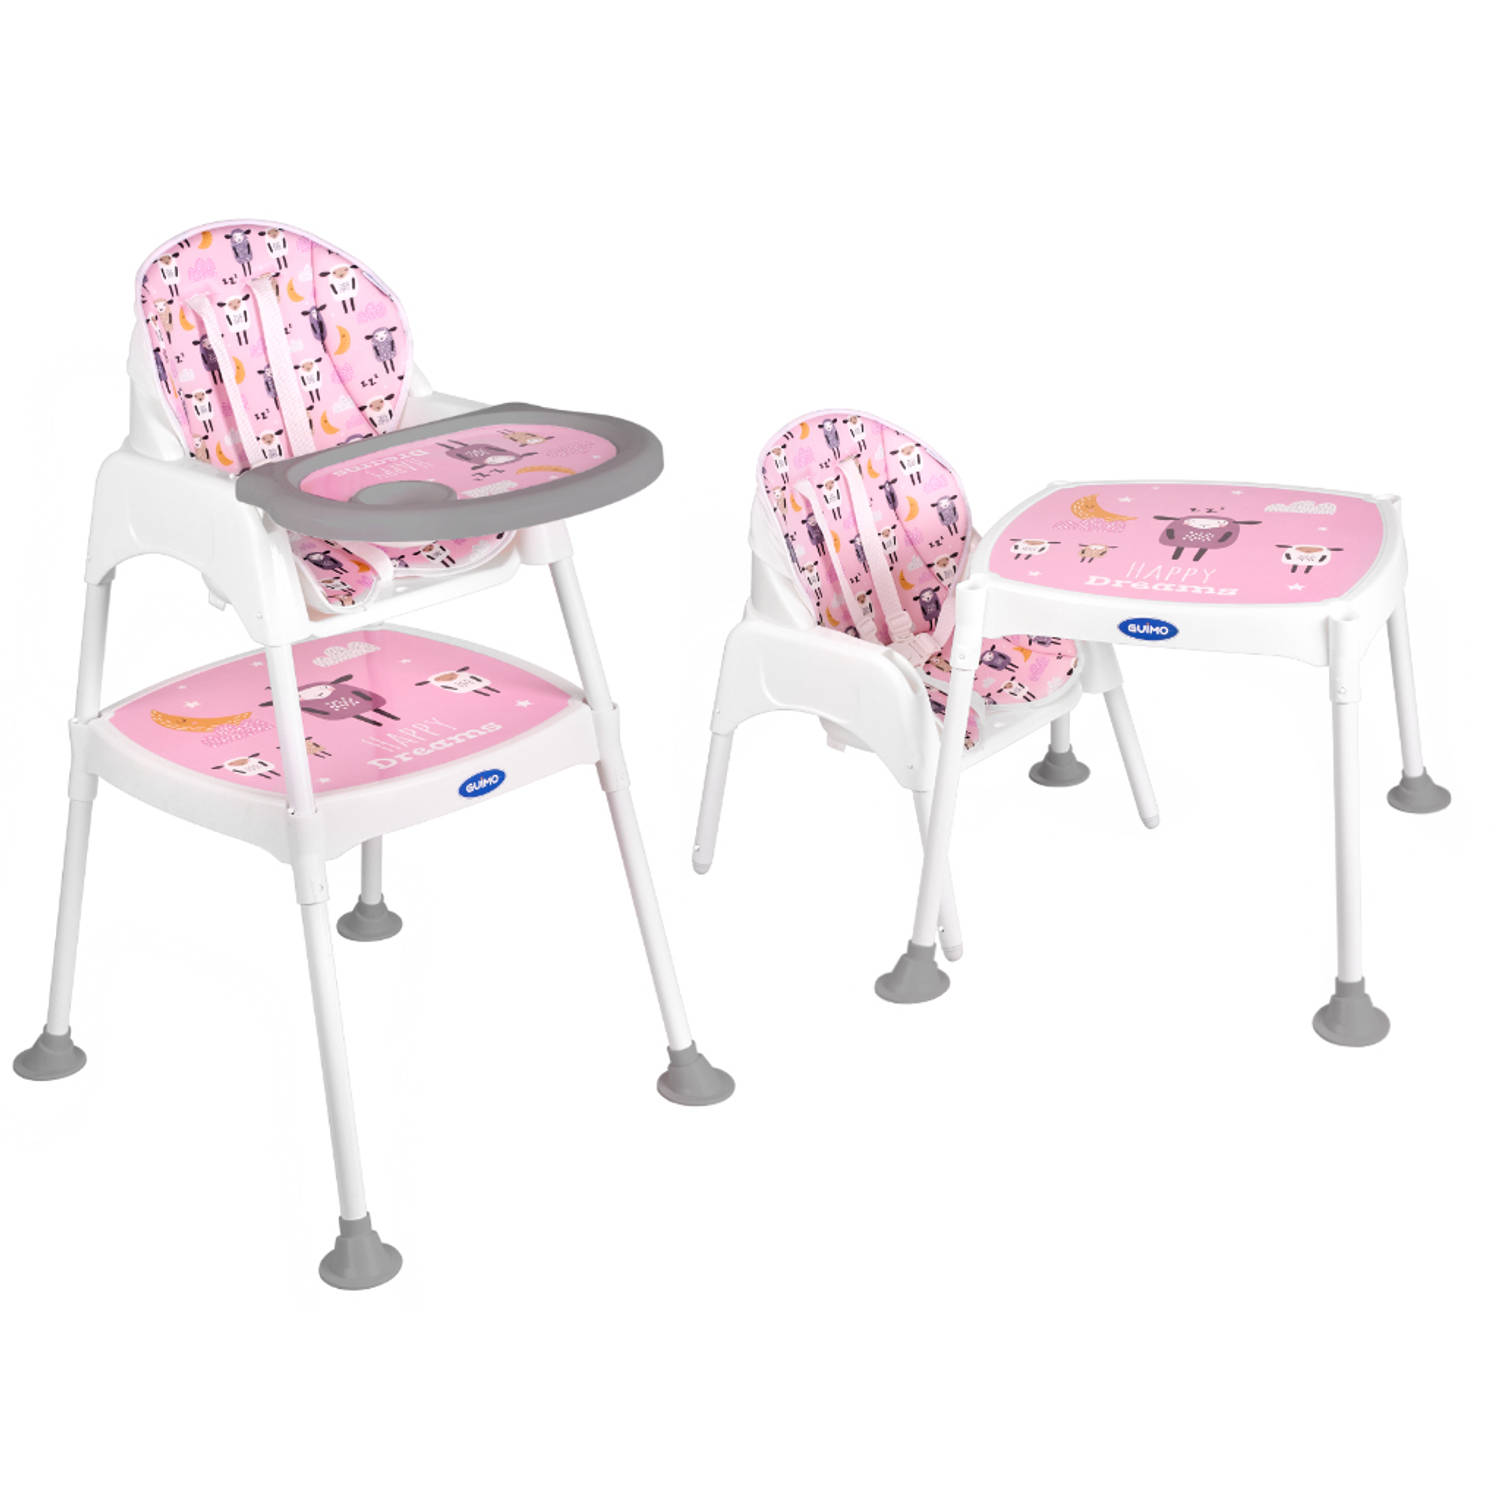 Kinderstoel 3 in 1 - 5 punts veiligheidsgordel - Roze